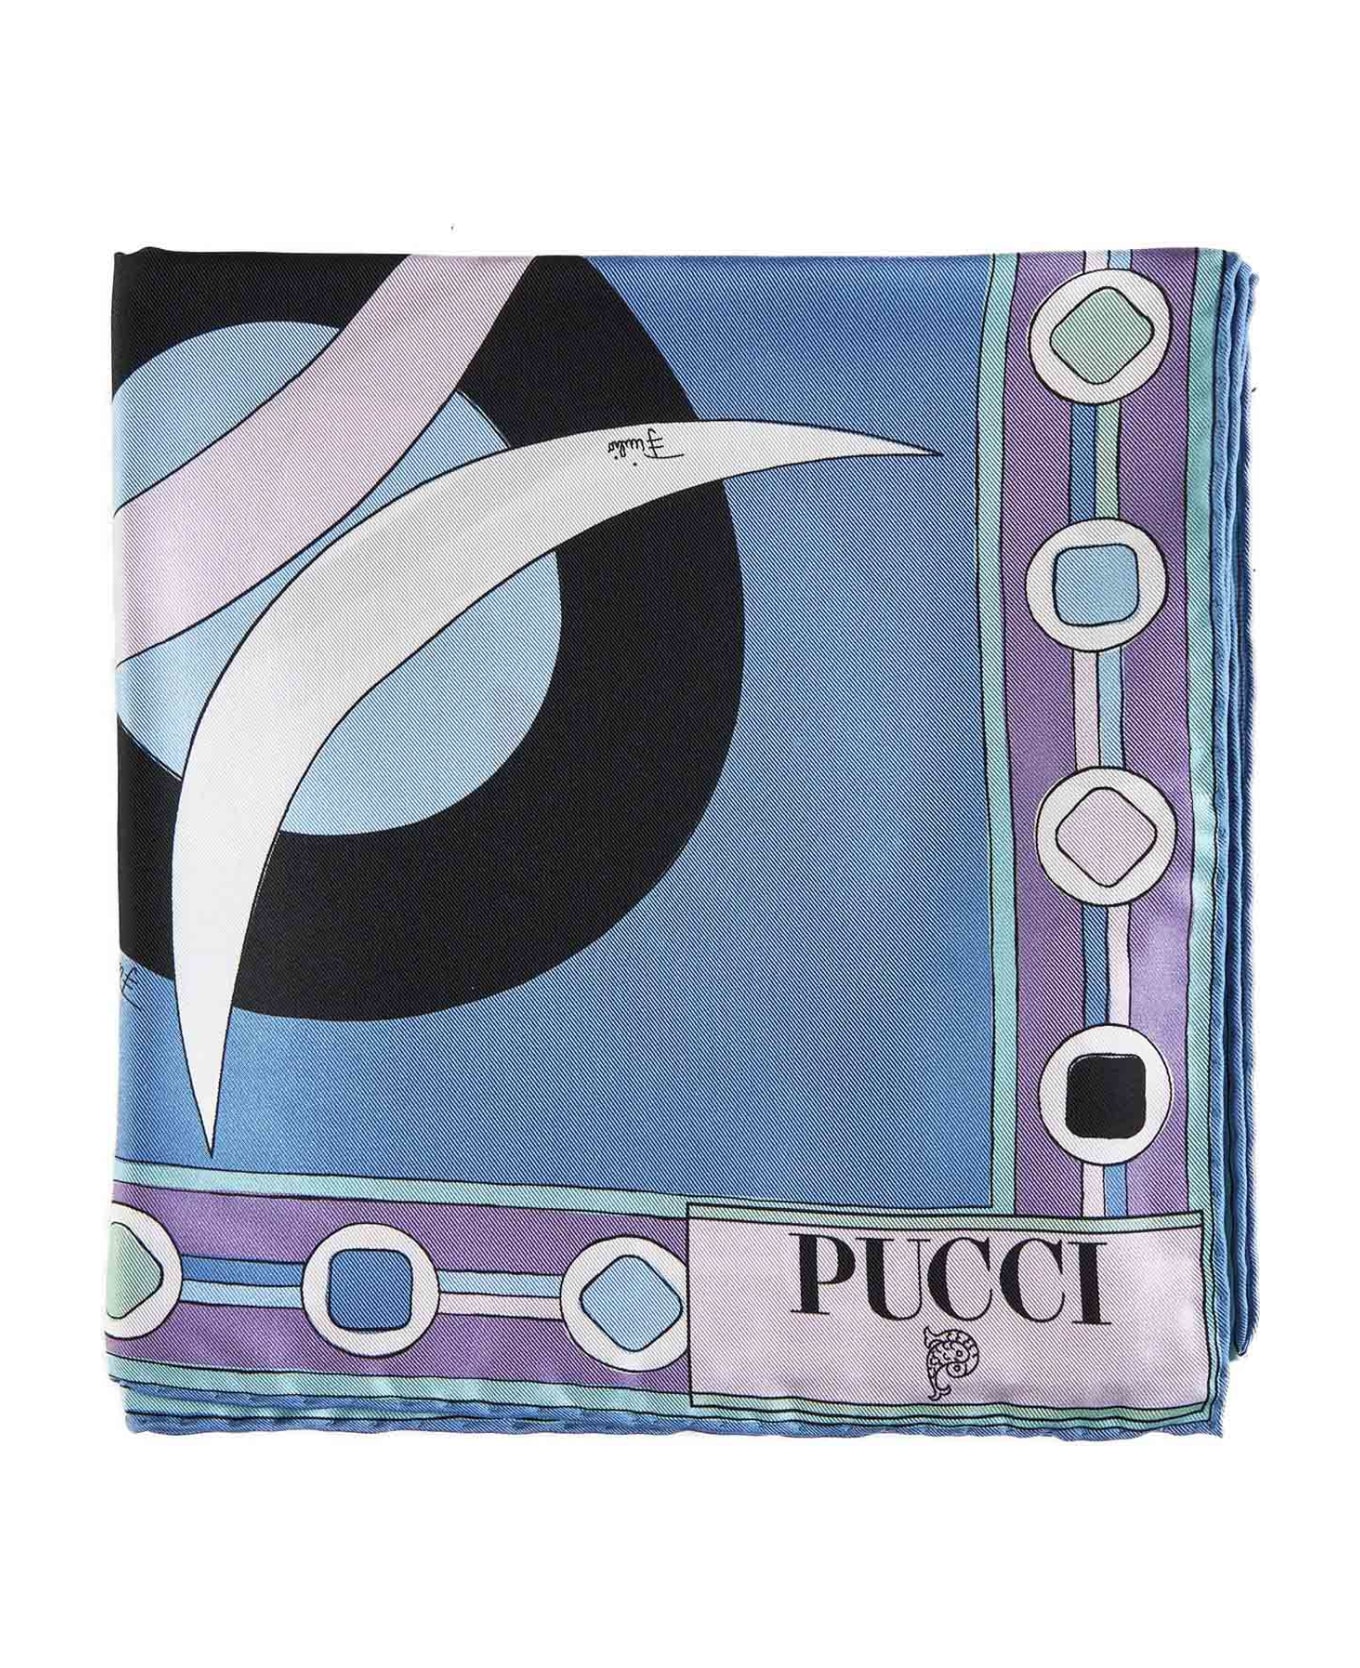 Pucci Scarf - Celeste bianco